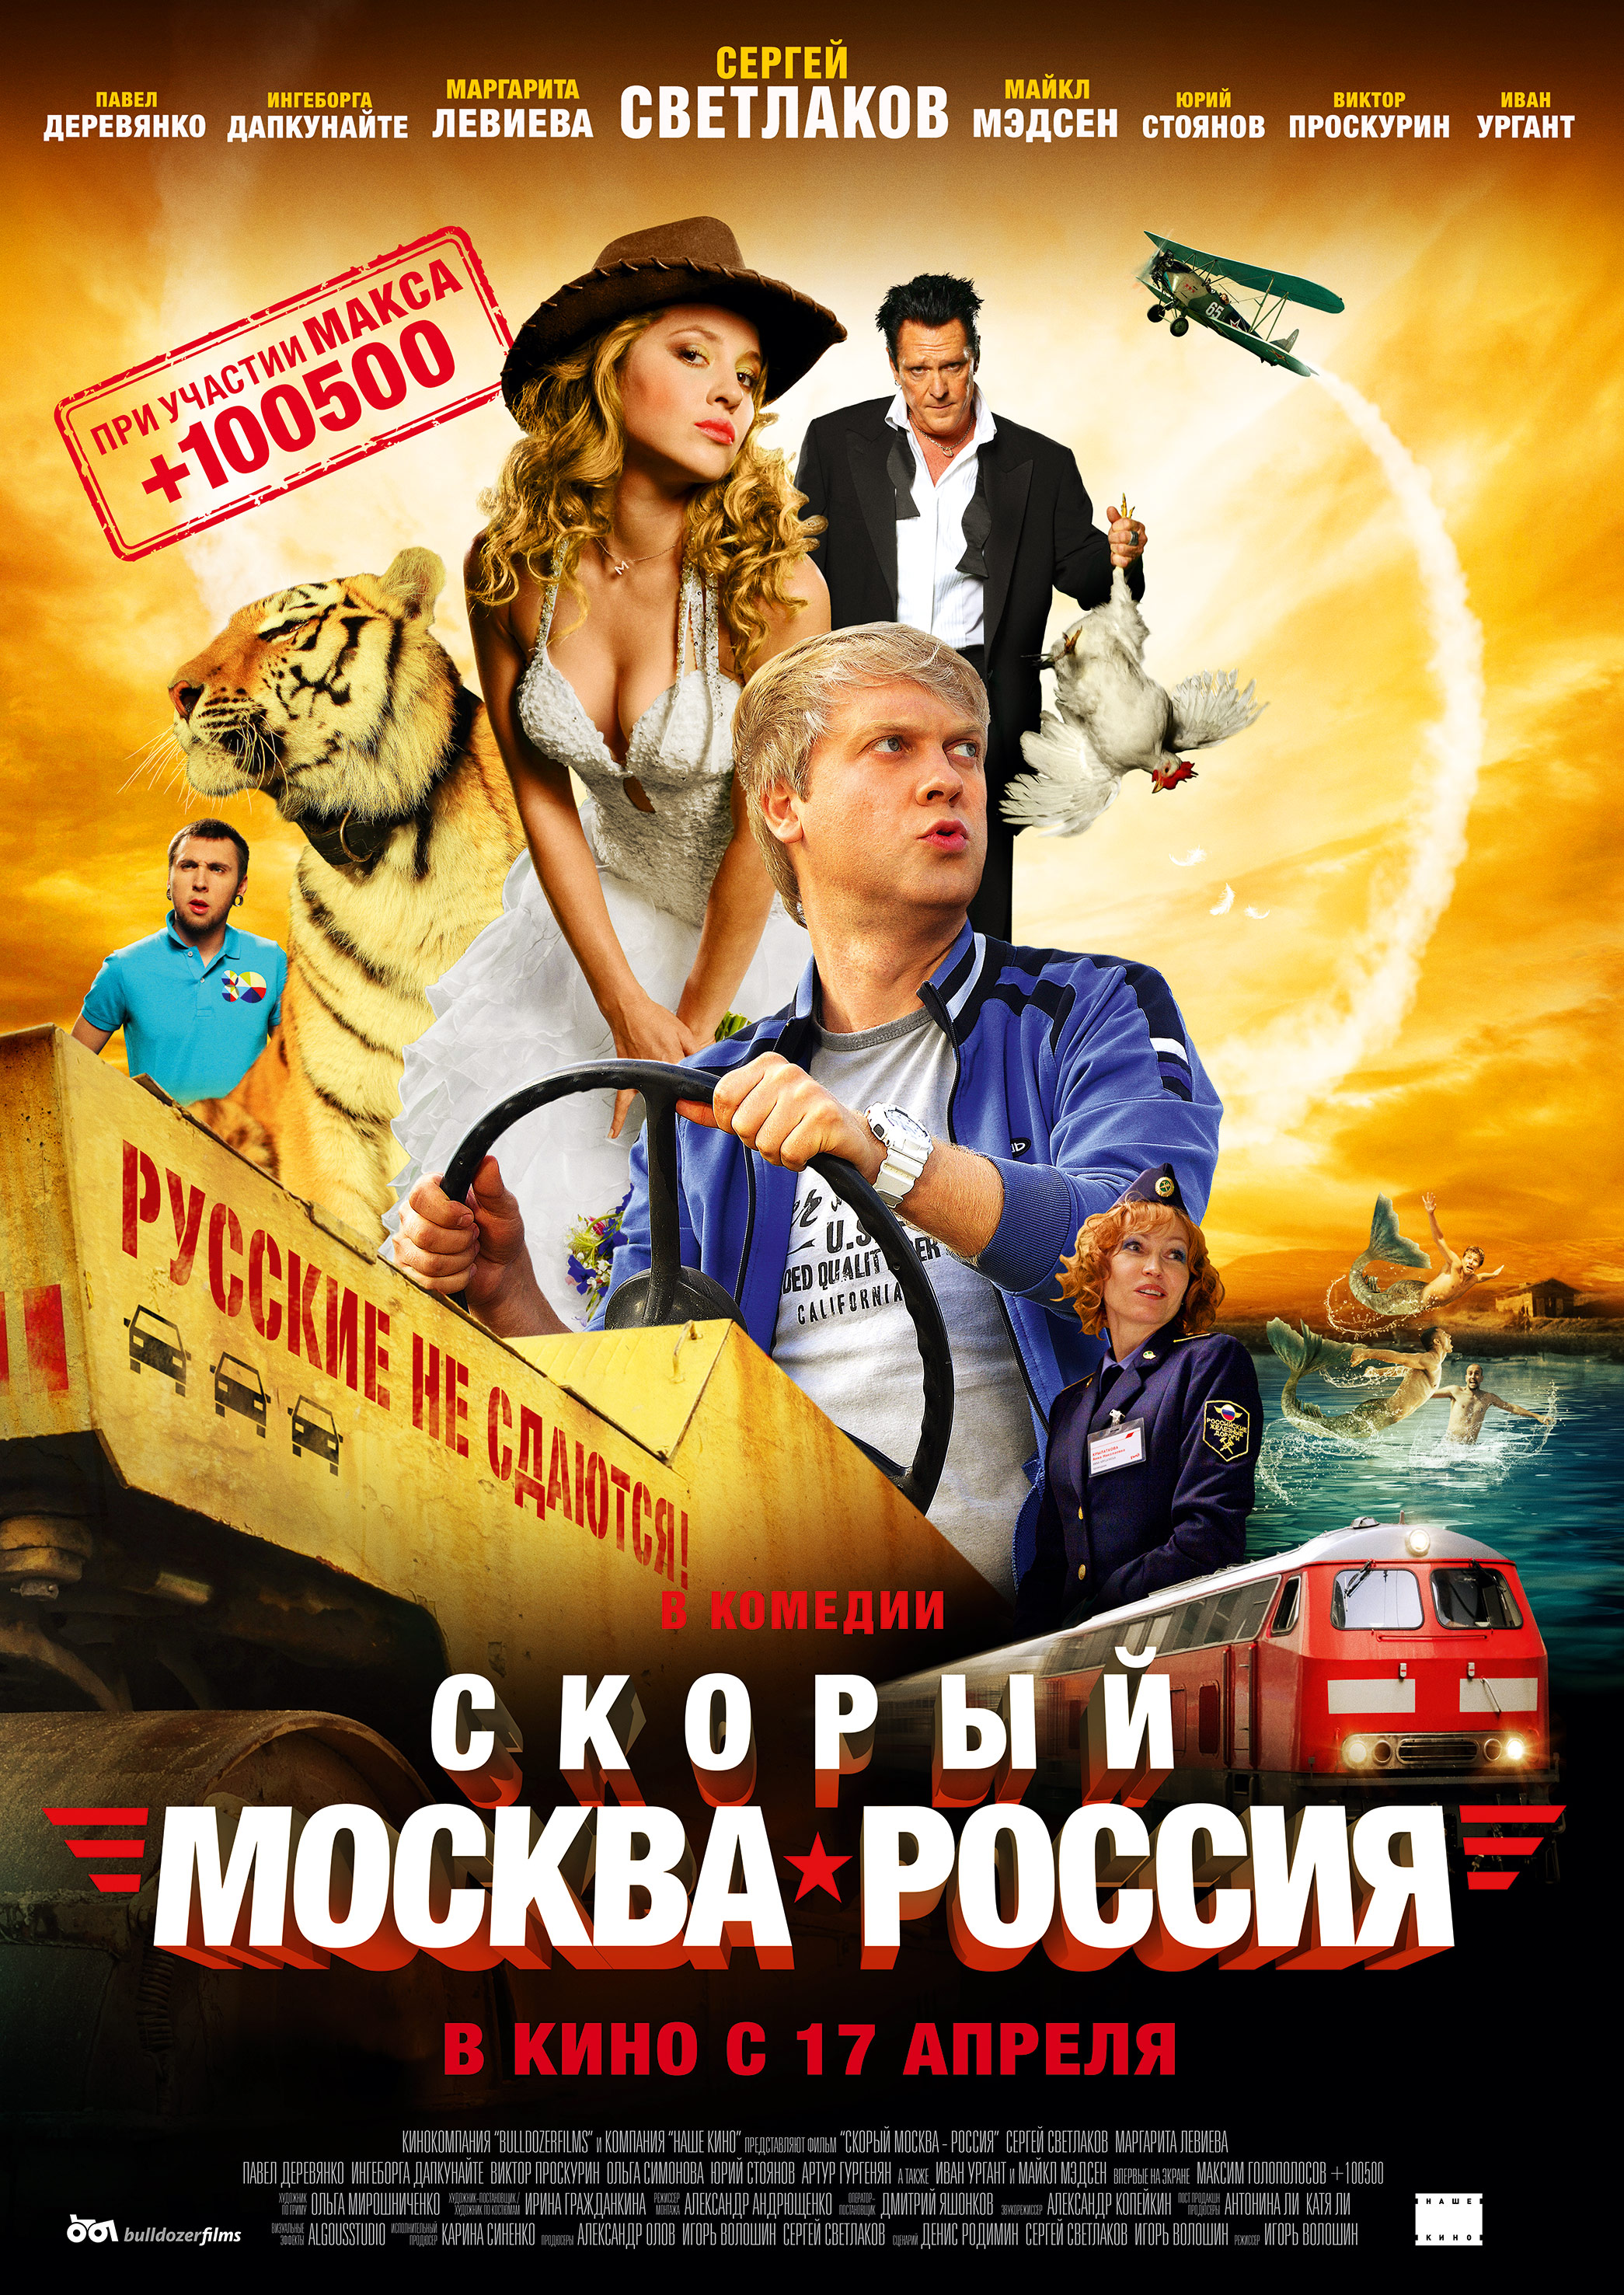 Легкие русские комедии. Скорый Москва-Россия 2014 Постер.